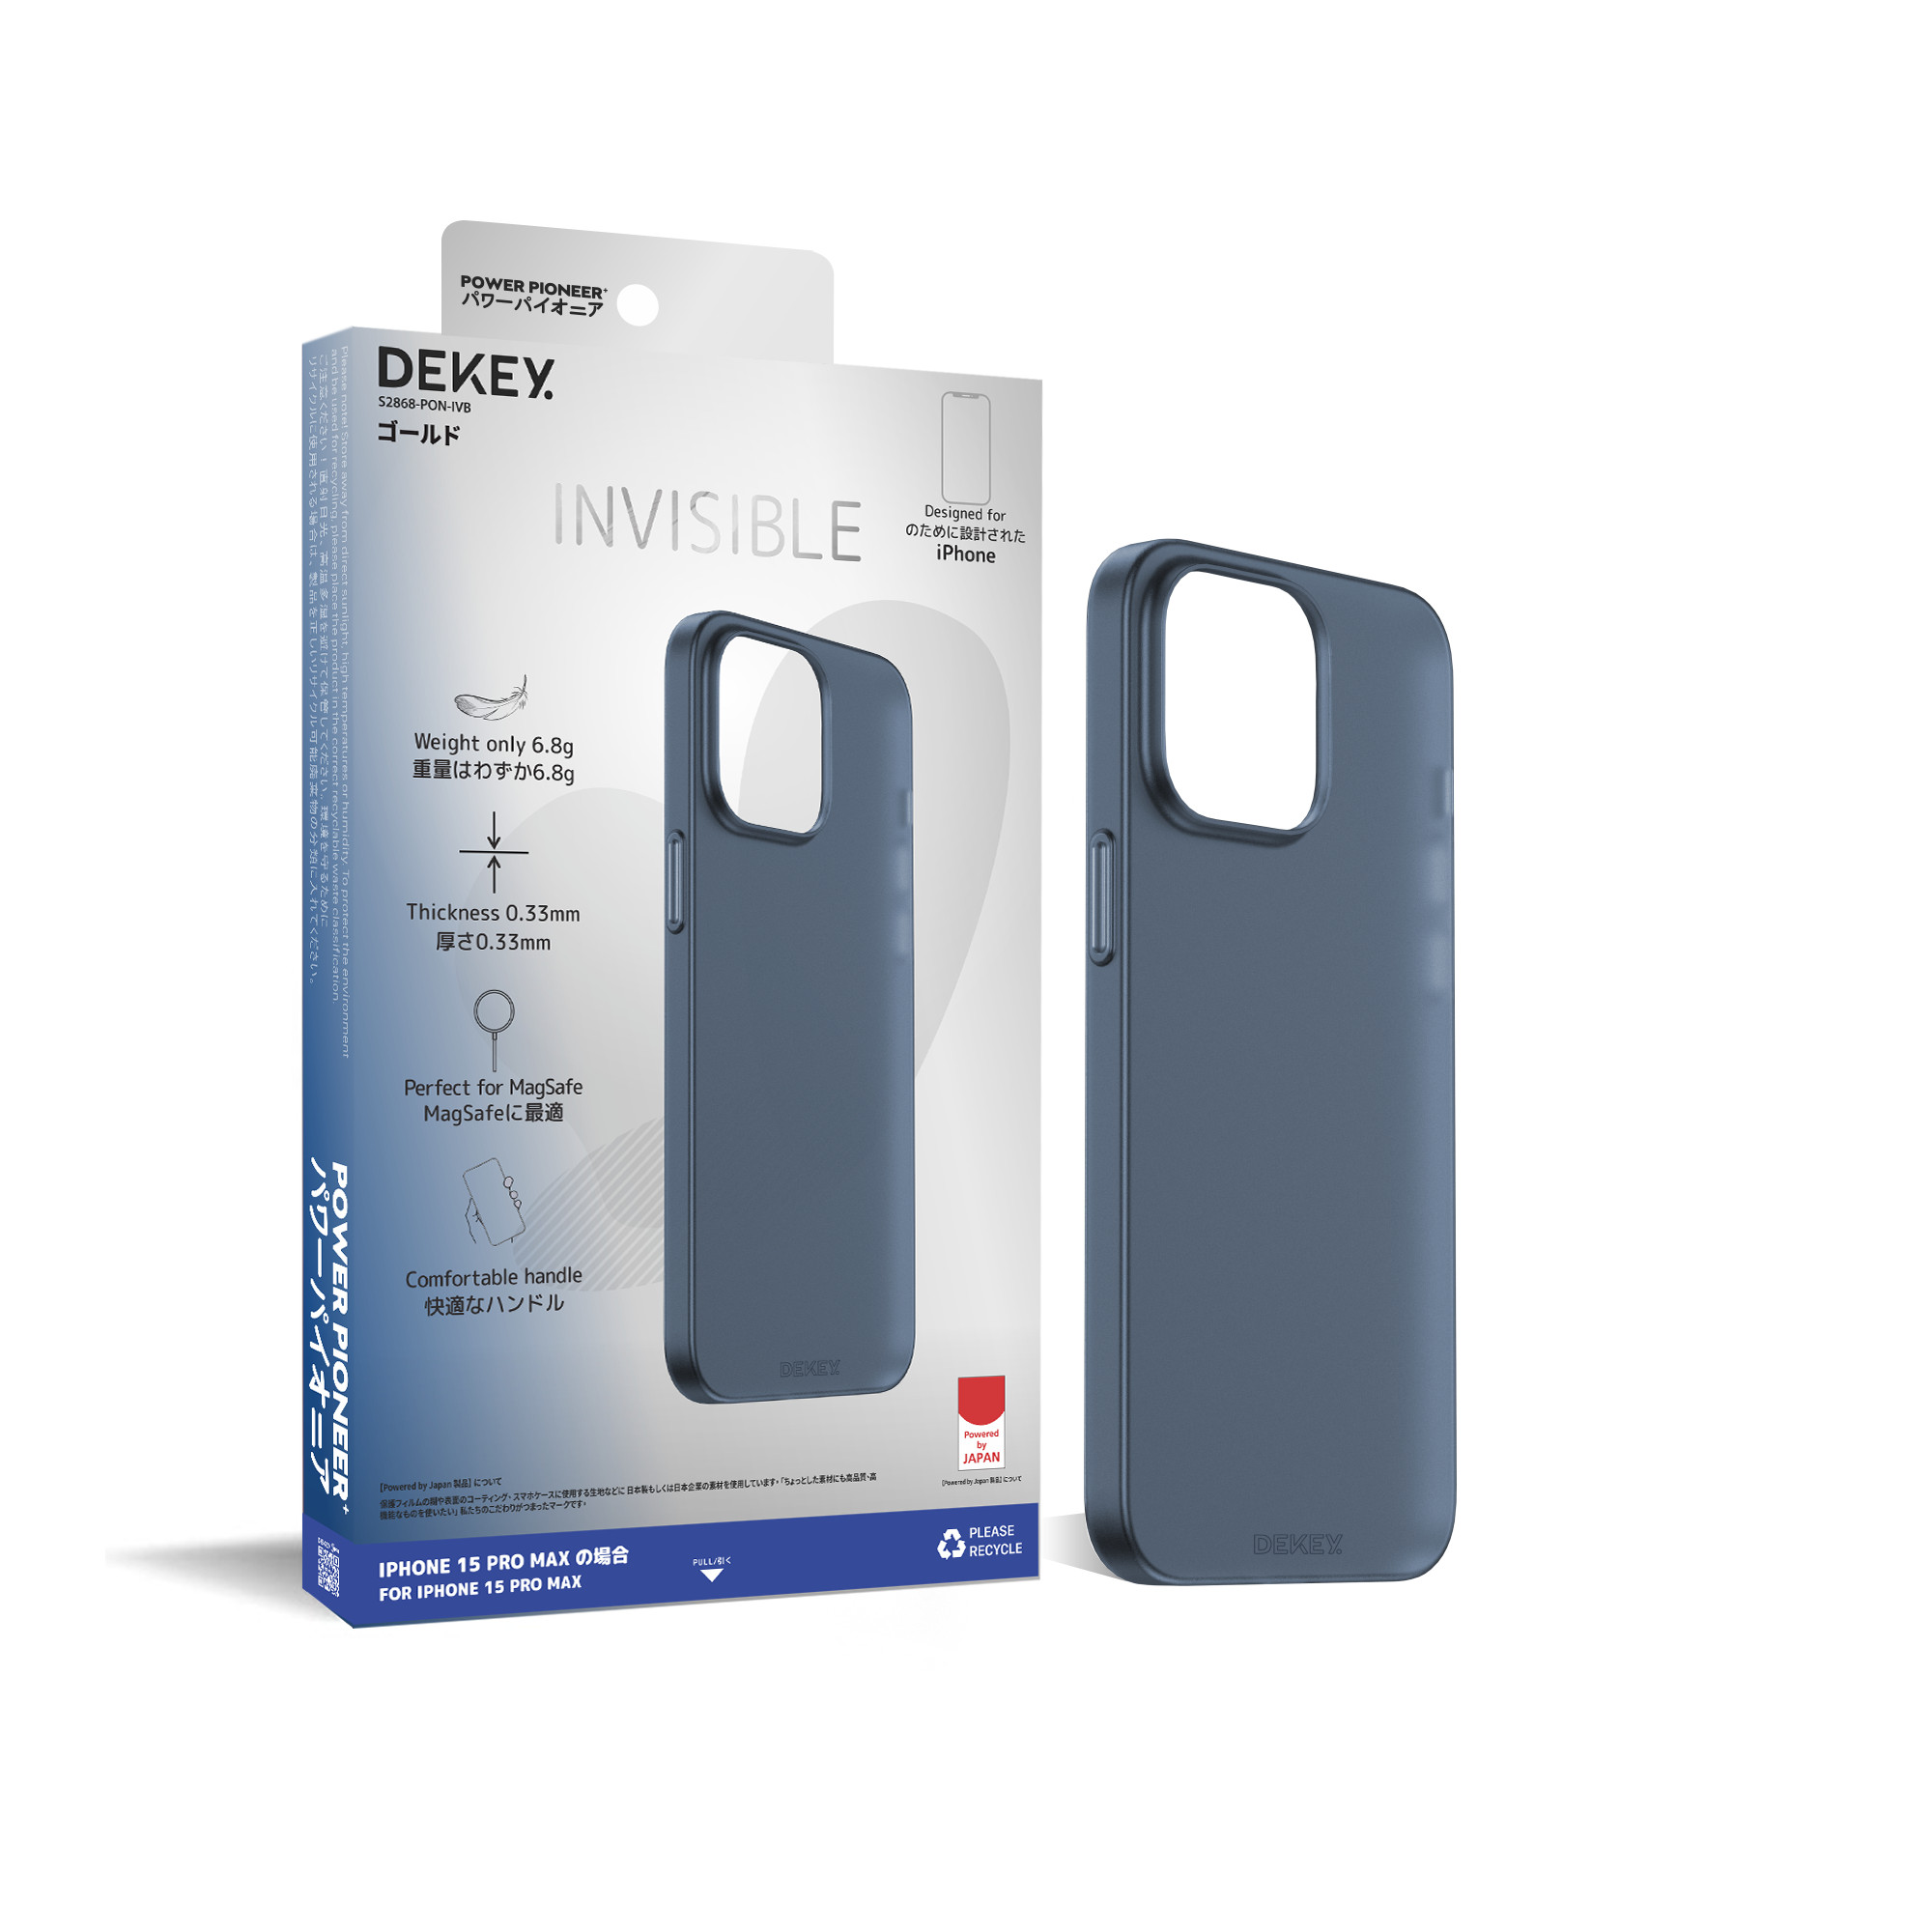 Dekey iPhone 15 Promax Invisible Ultra Slim Case, Anti-fingerprint and anti-scratch